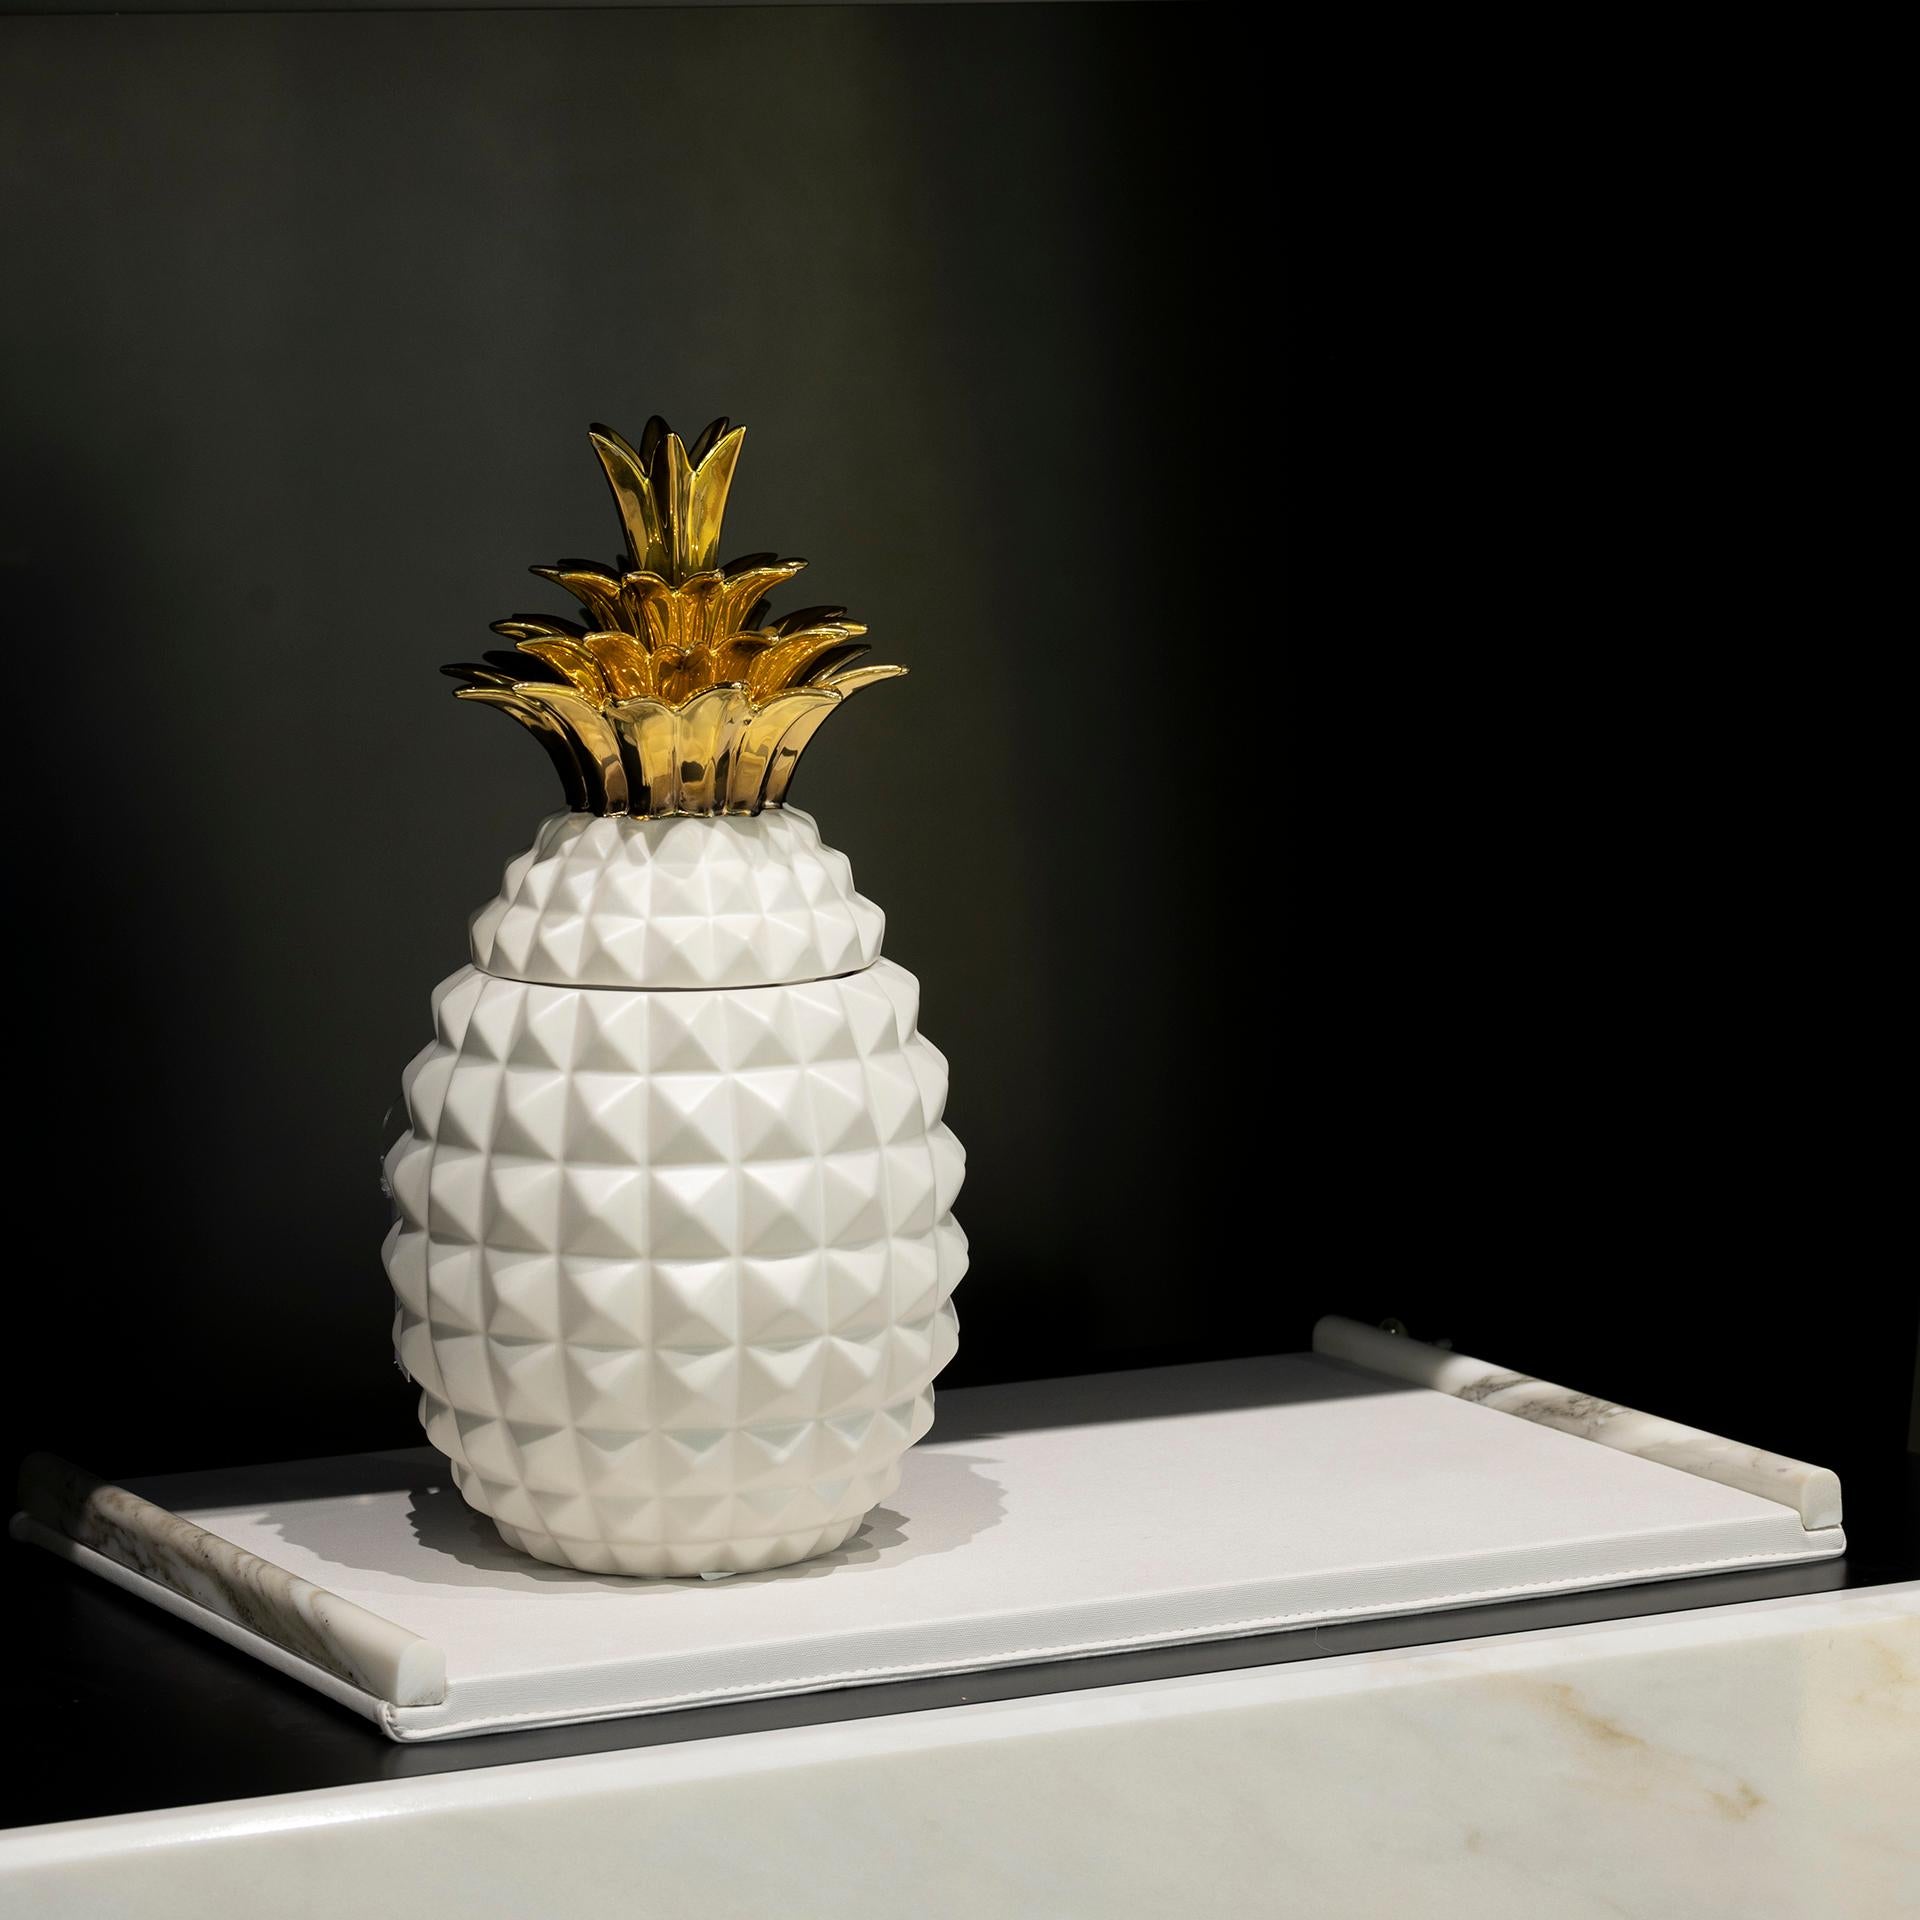 Pots décoratifs en forme d'ananas, Collection Lusitanus Home, fabriqués à la main au Portugal - Europe par Lusitanus Home.

Ce magnifique ensemble comprend deux pots en céramique imperméables avec couvercle, parfaits pour être exposés ensemble et